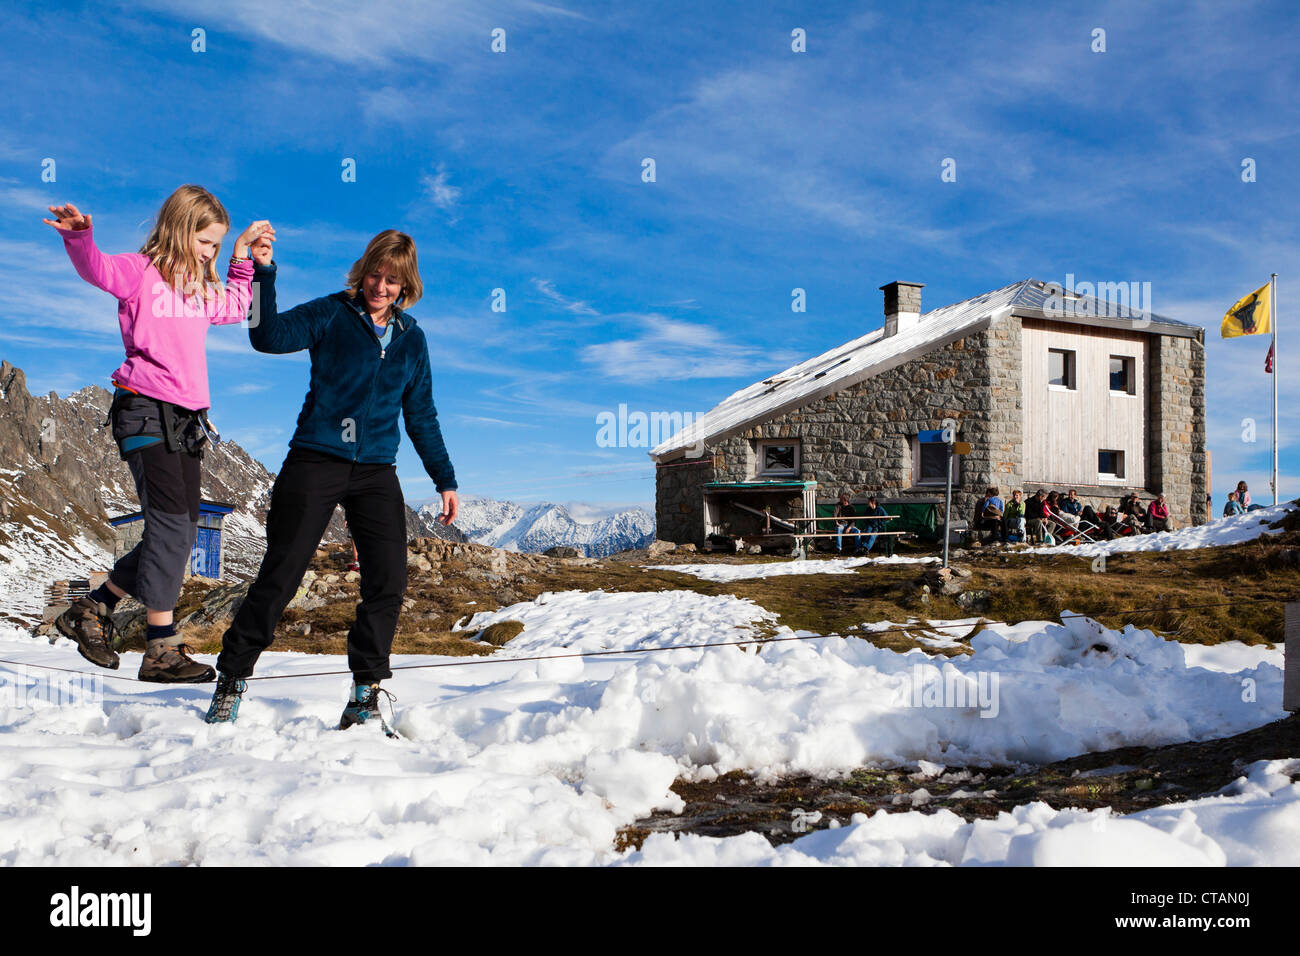 Eine Frau, ein Mädchen Gleichgewicht auf einer Slackline bei der Sewenhut helfen SAC Schweizer Alpen-Clubs, Schweizer Alpen, Kanton Uri, Schweiz Stockfoto